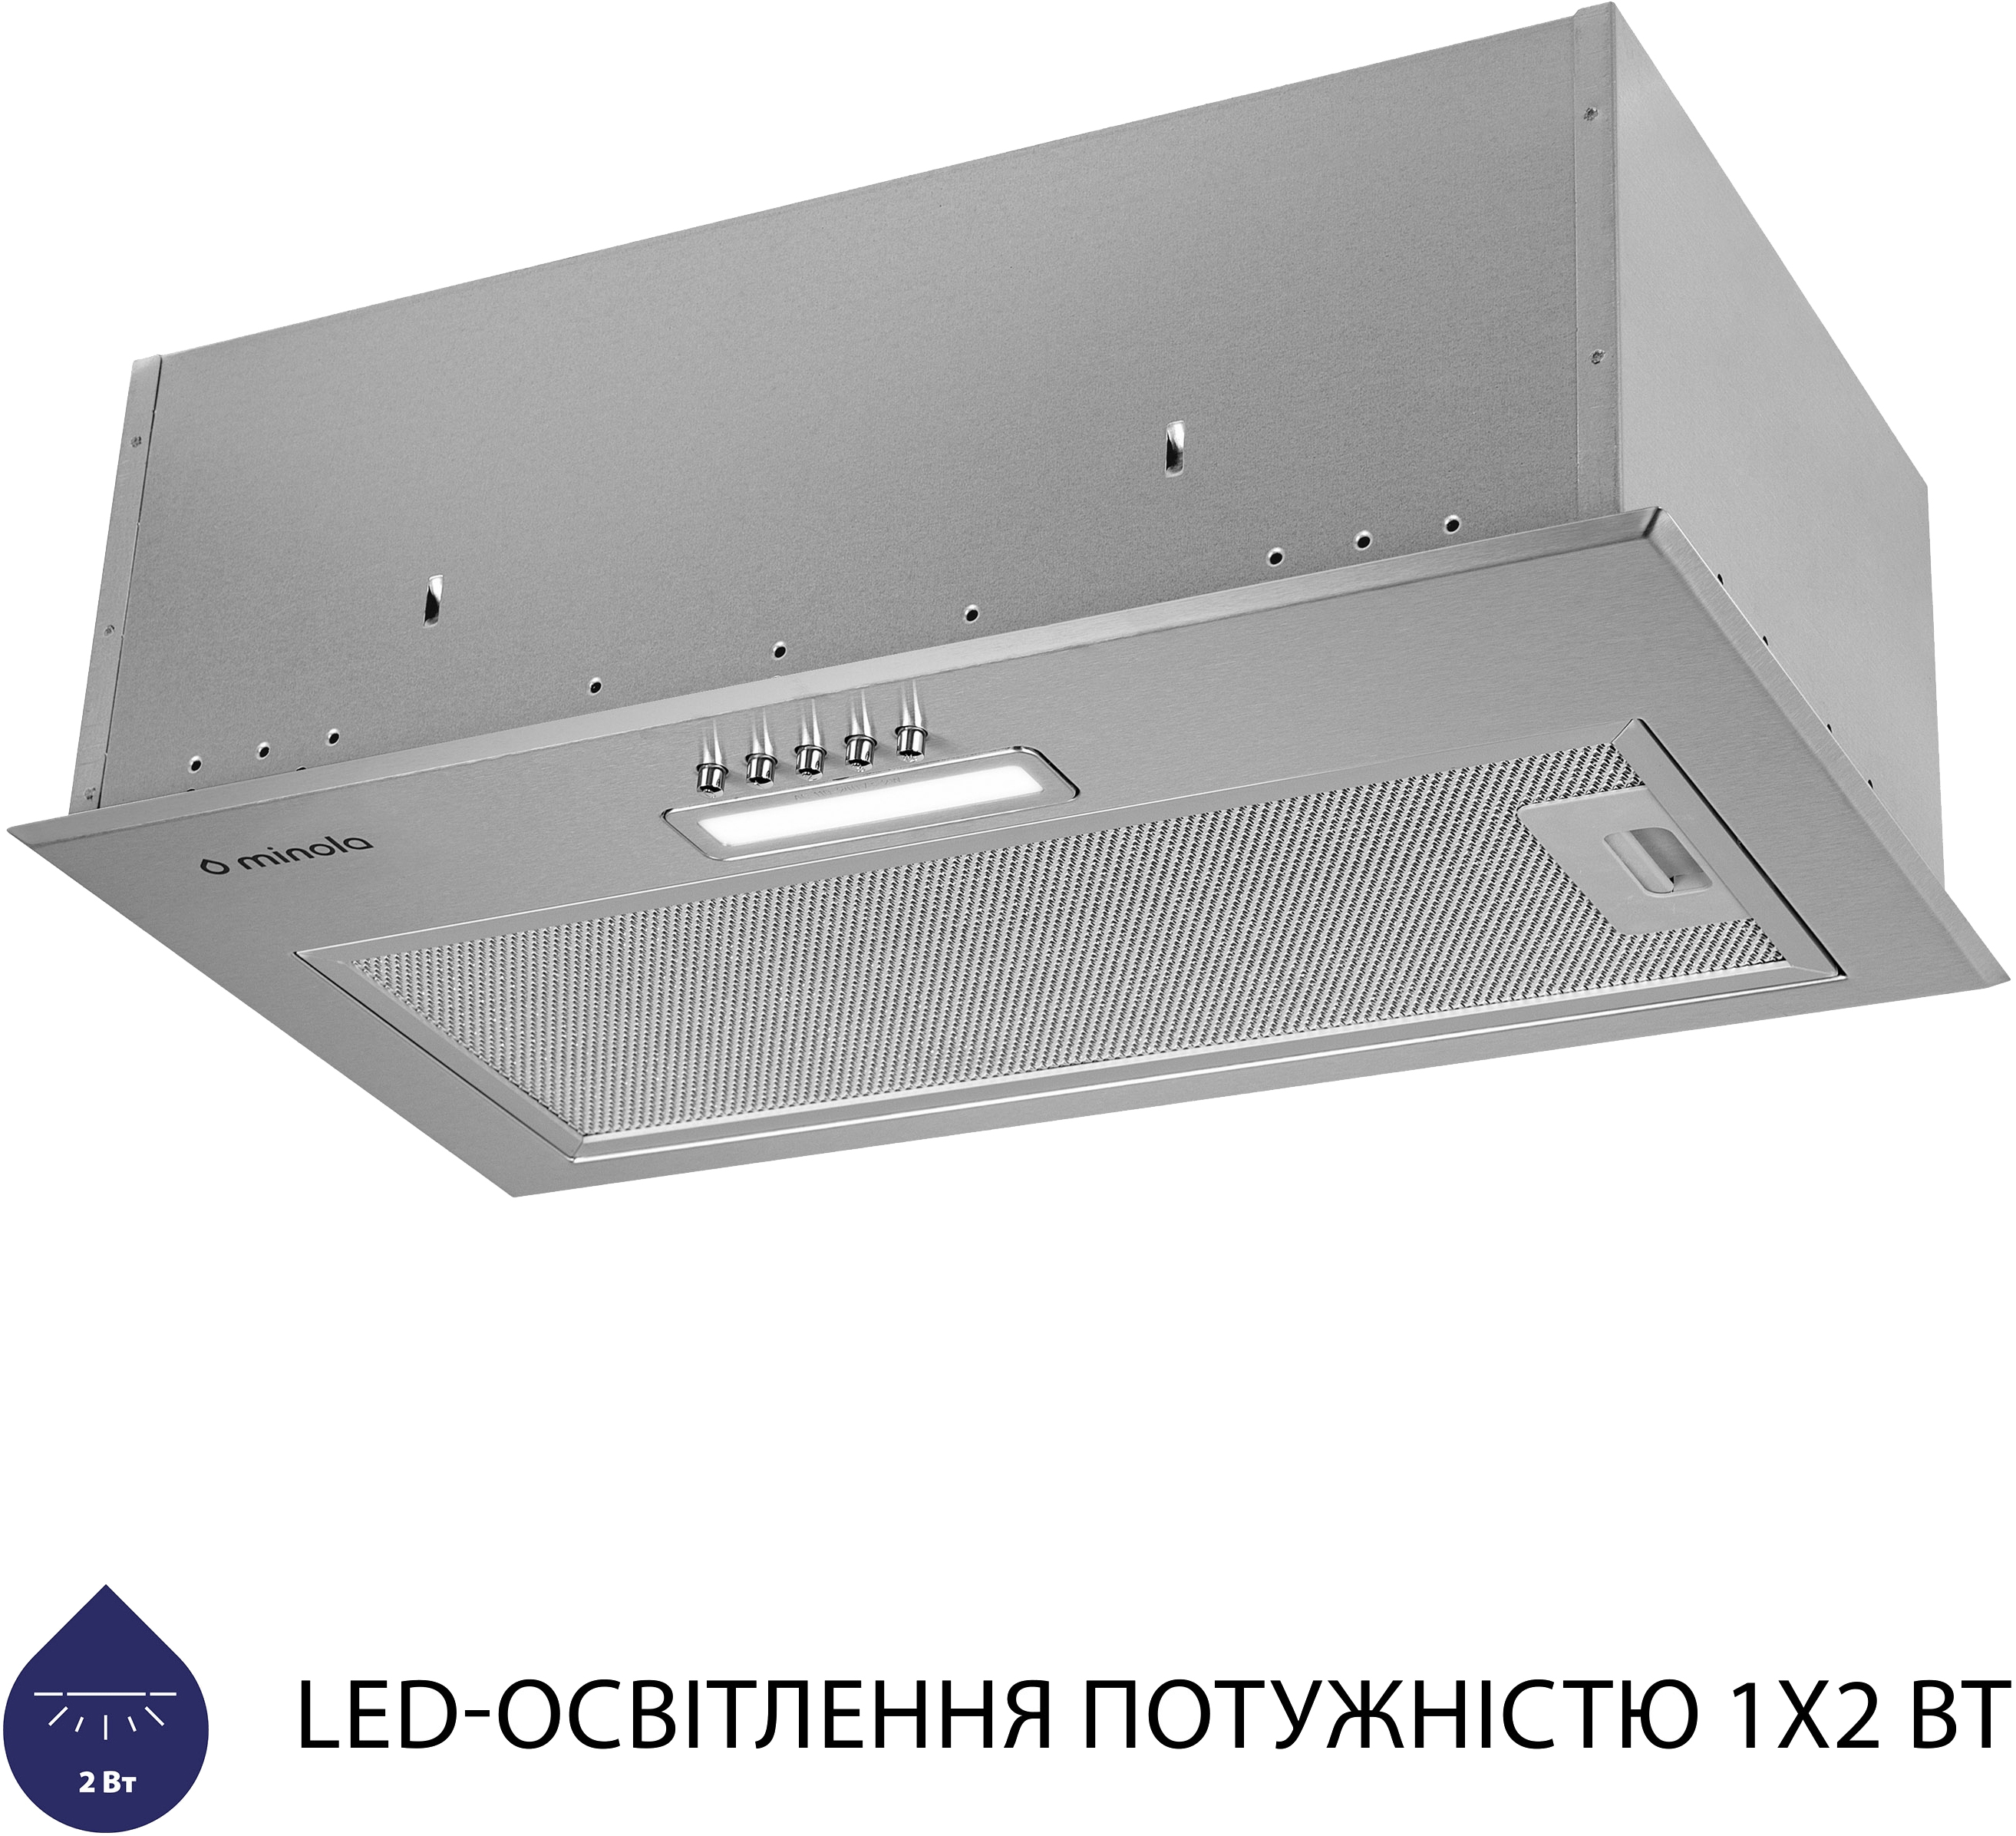 продаём Minola HBI 5214 I 700 LED в Украине - фото 4